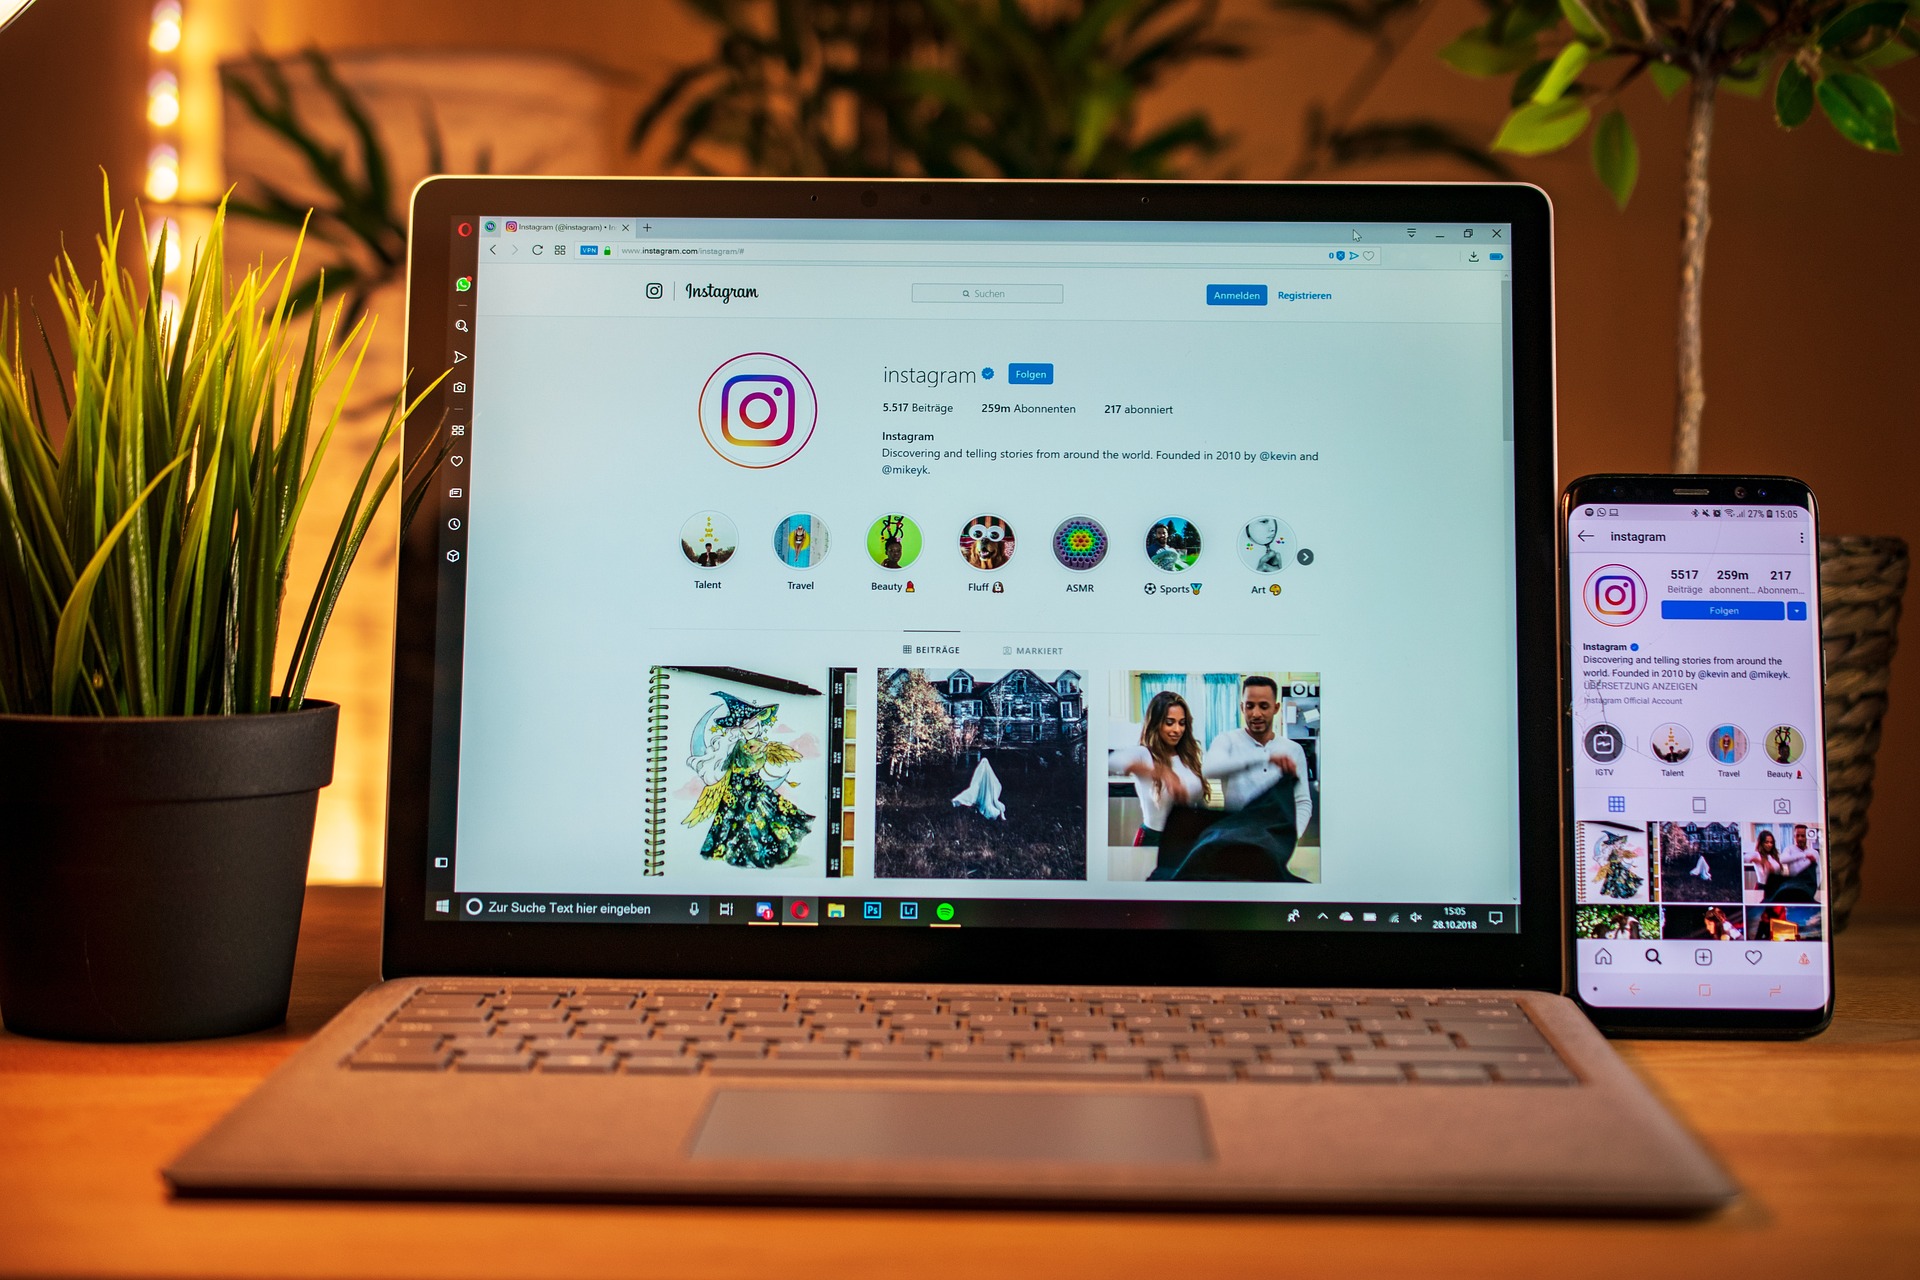 Imagem de uma mesa contendo um vaso de plantas à esquerda, um notebook ao centro e um celular à direita, ambos exibindo a tela do aplicativo instagram.